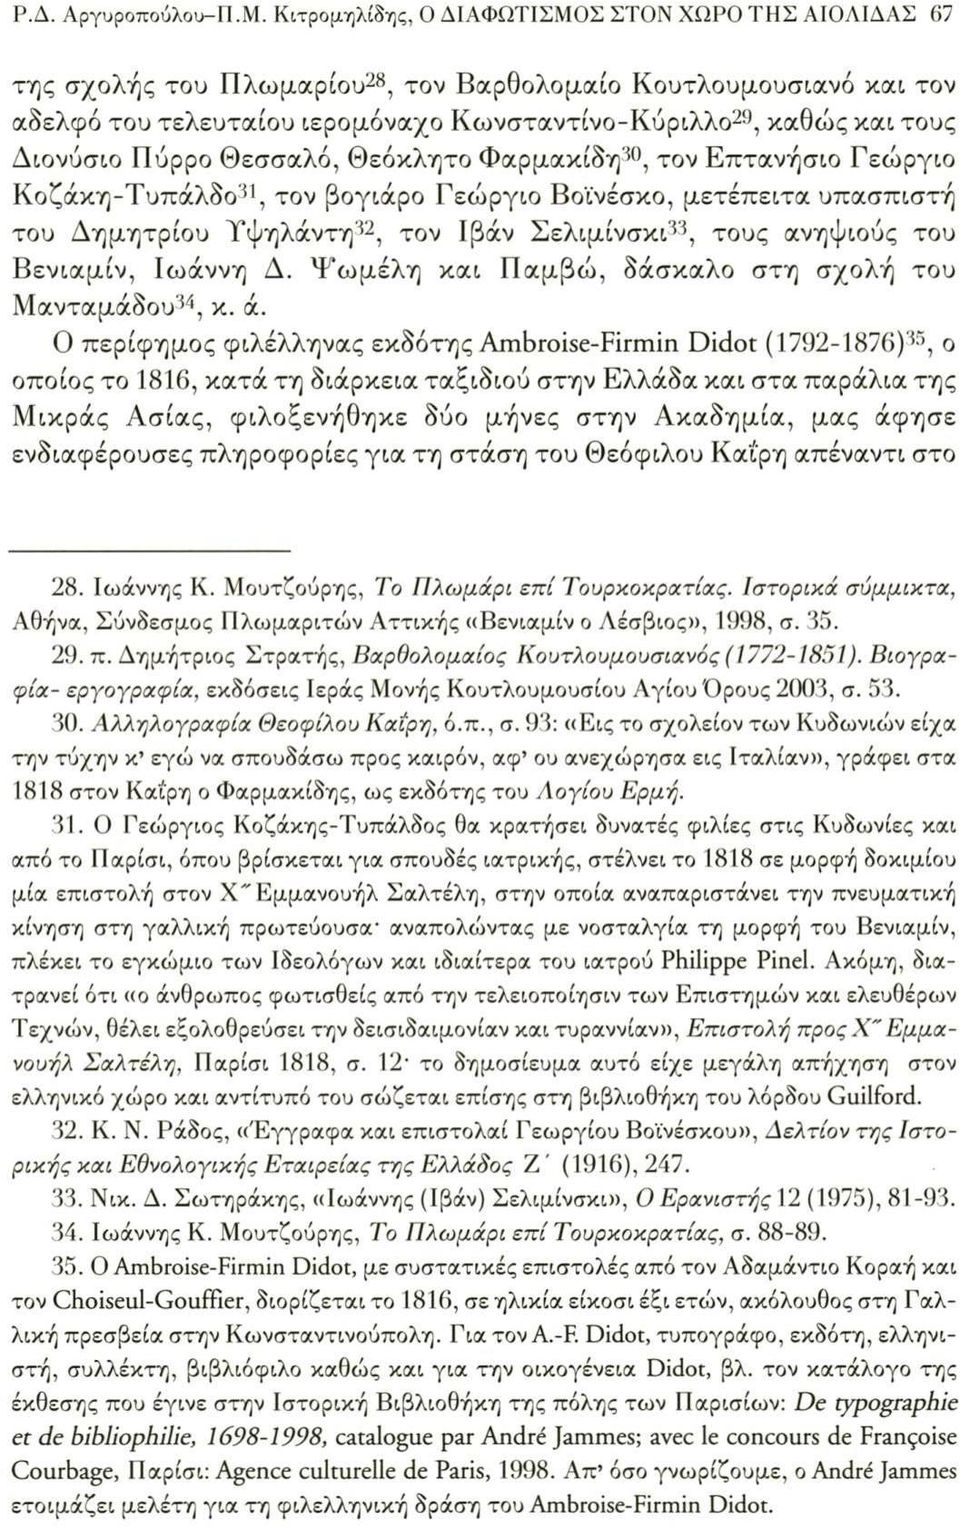 Διονύσιο Πύρρο Θεσσαλό, Θεόκλητο Φαρμακίδη30, τον Επτανήσιο Γεώργιο Κοζάκη-Τυπάλδο31, τον βογιάρο Γεώργιο Βοϊνέσκο, μετέπειτα υπασπιστή του Δημητρίου Υψηλάντη32, τον Ιβάν Σελιμίνσκι33, τους ανηψιούς